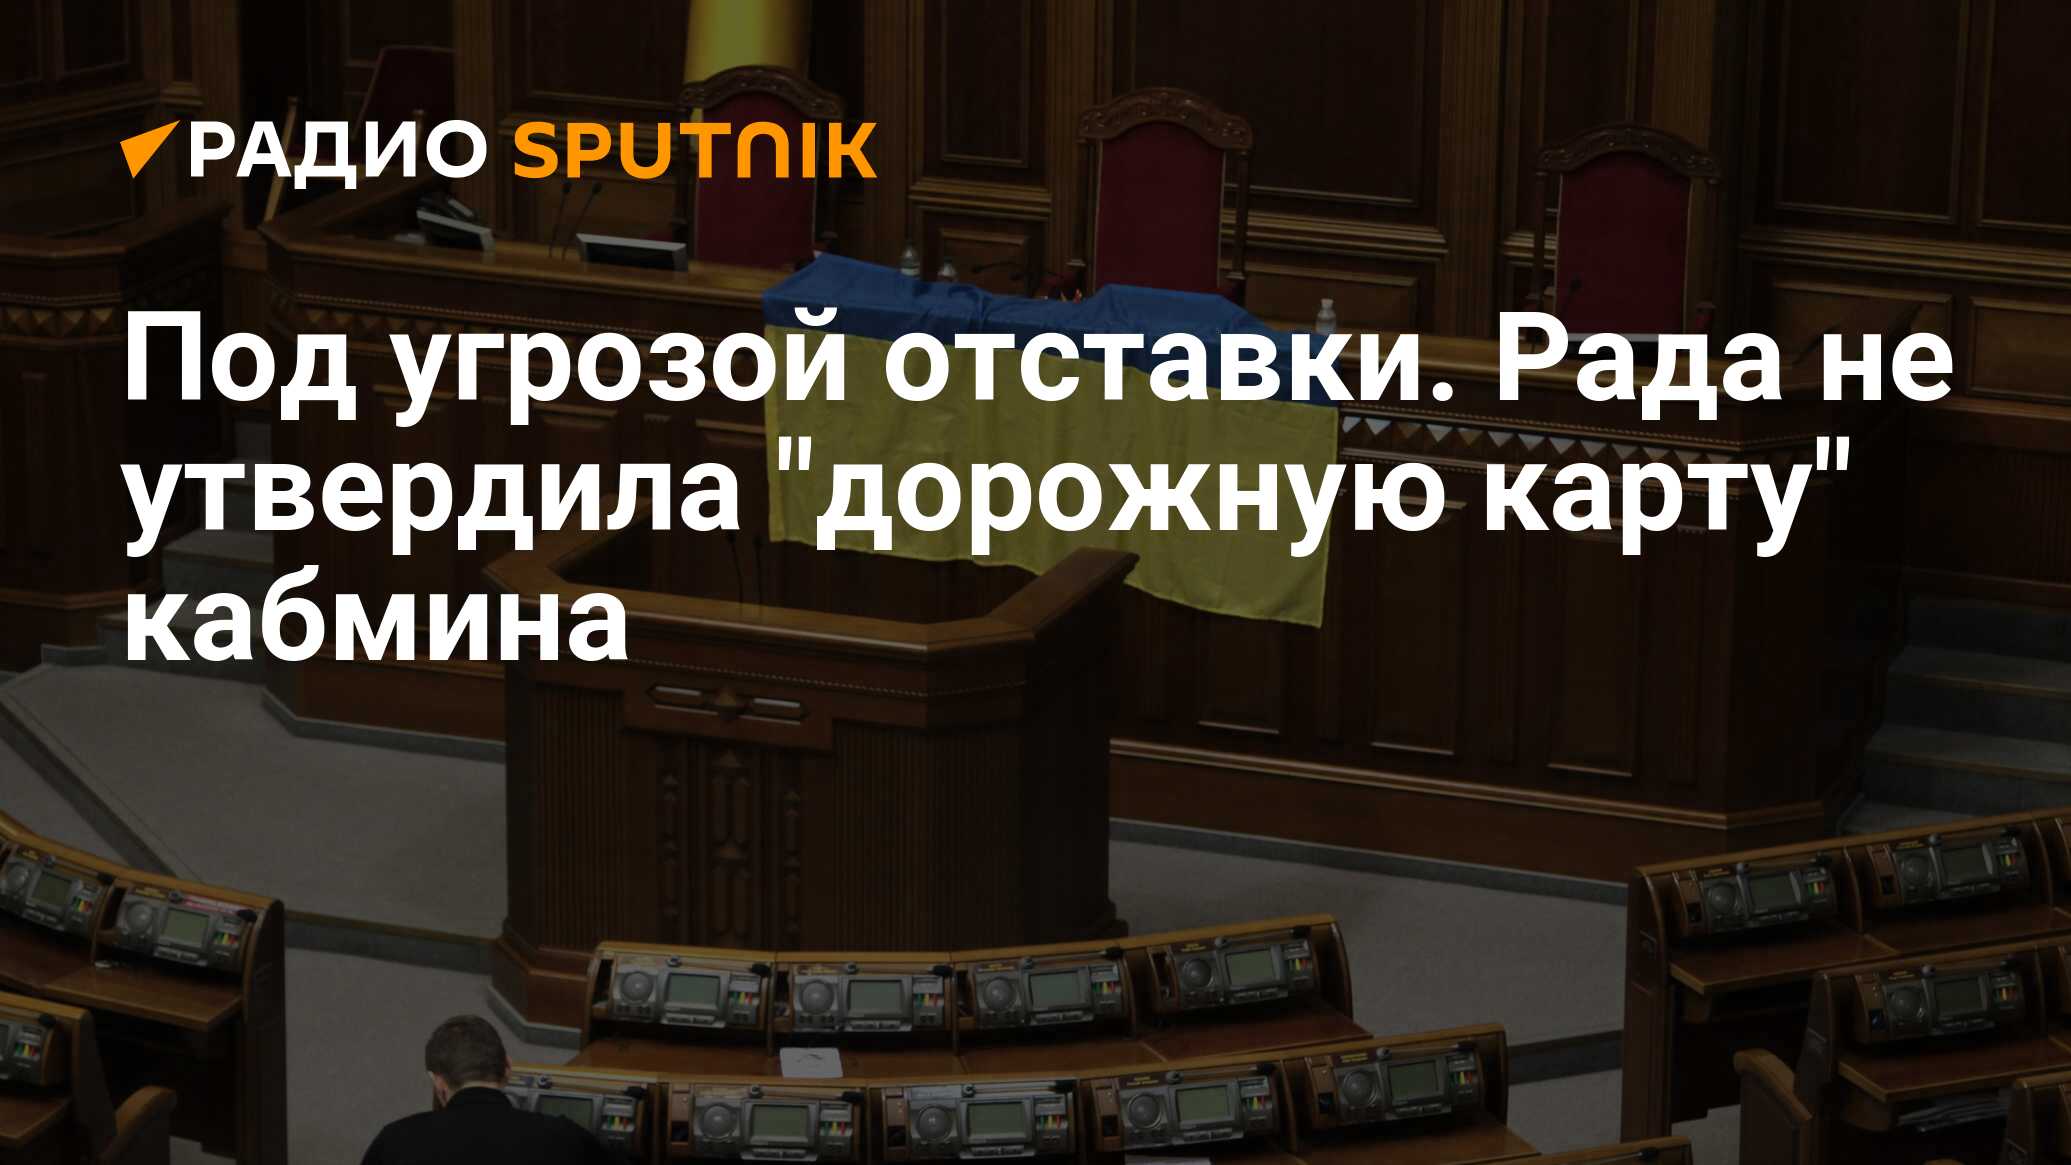 Верховная политика. Голосование в Раде про отставку Януковича вооруженные люди.